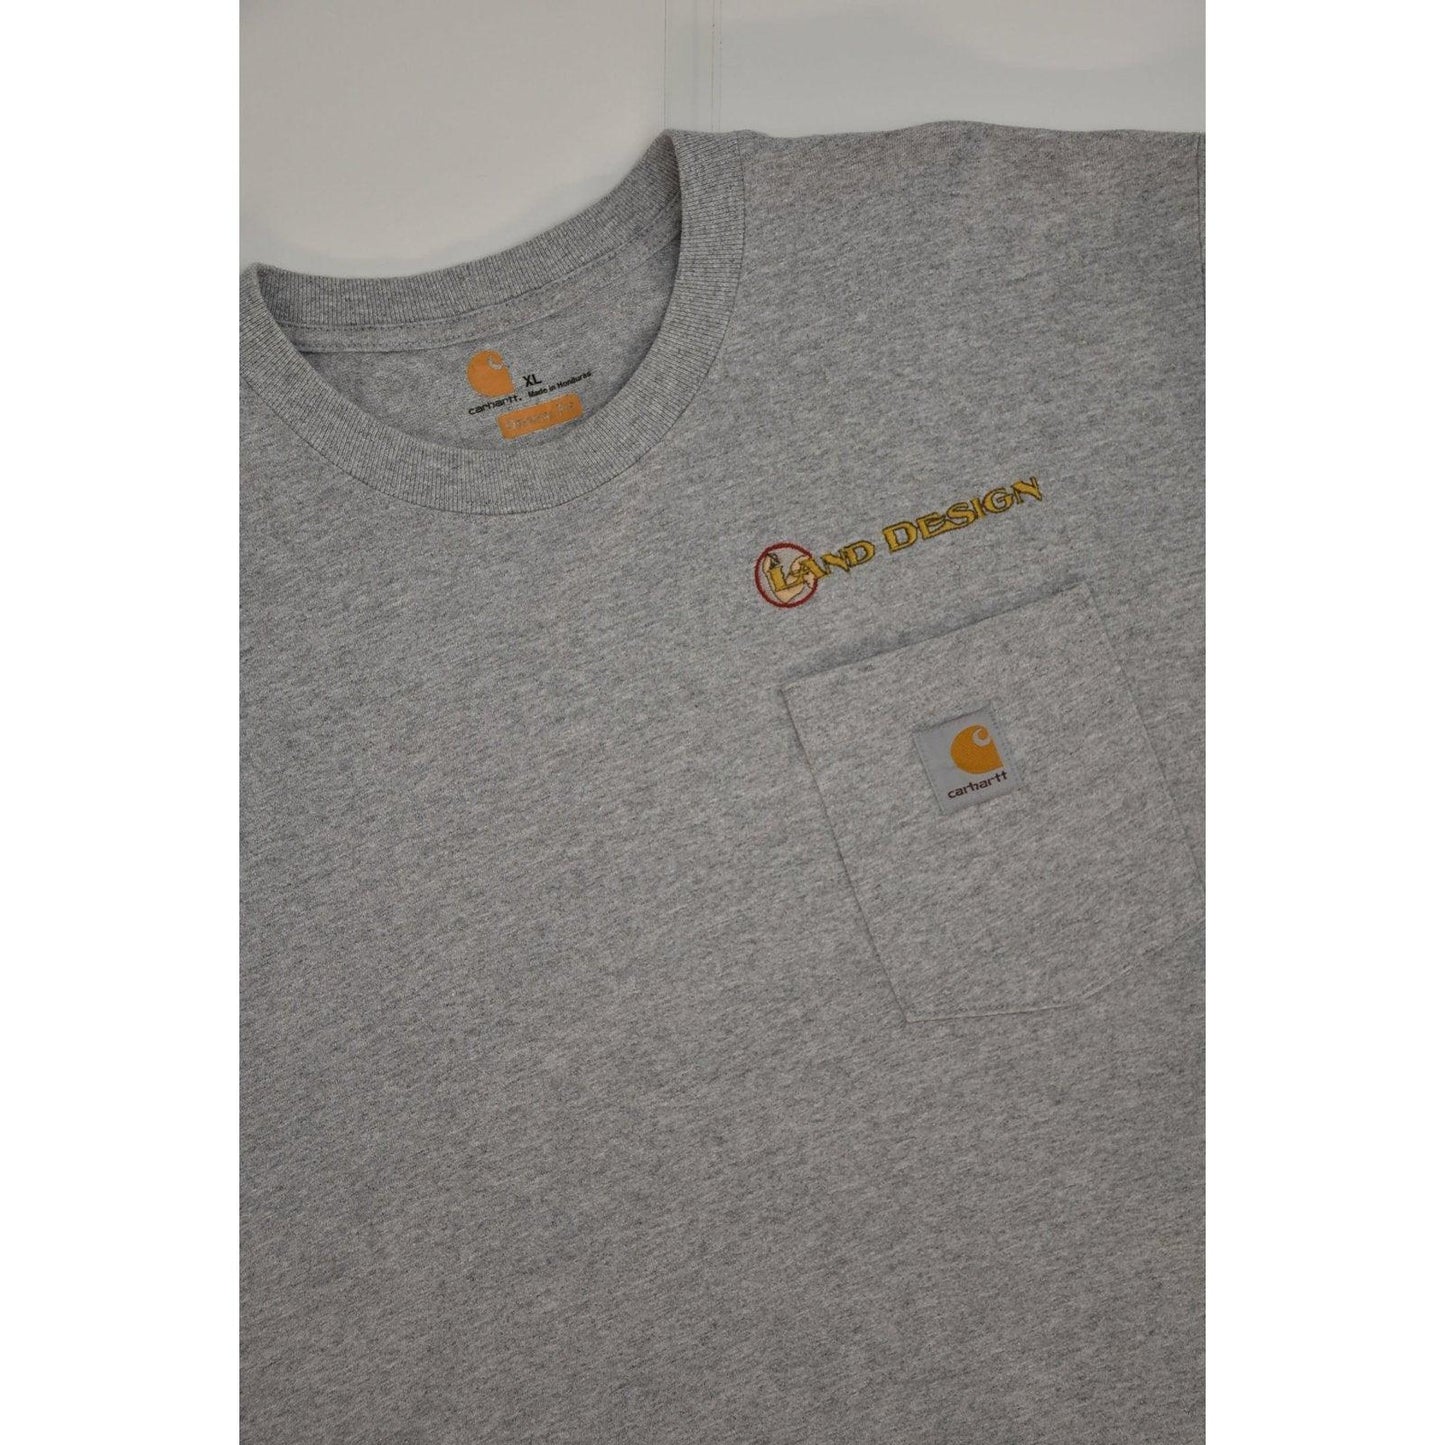 Carhartt T-shirt (XL)